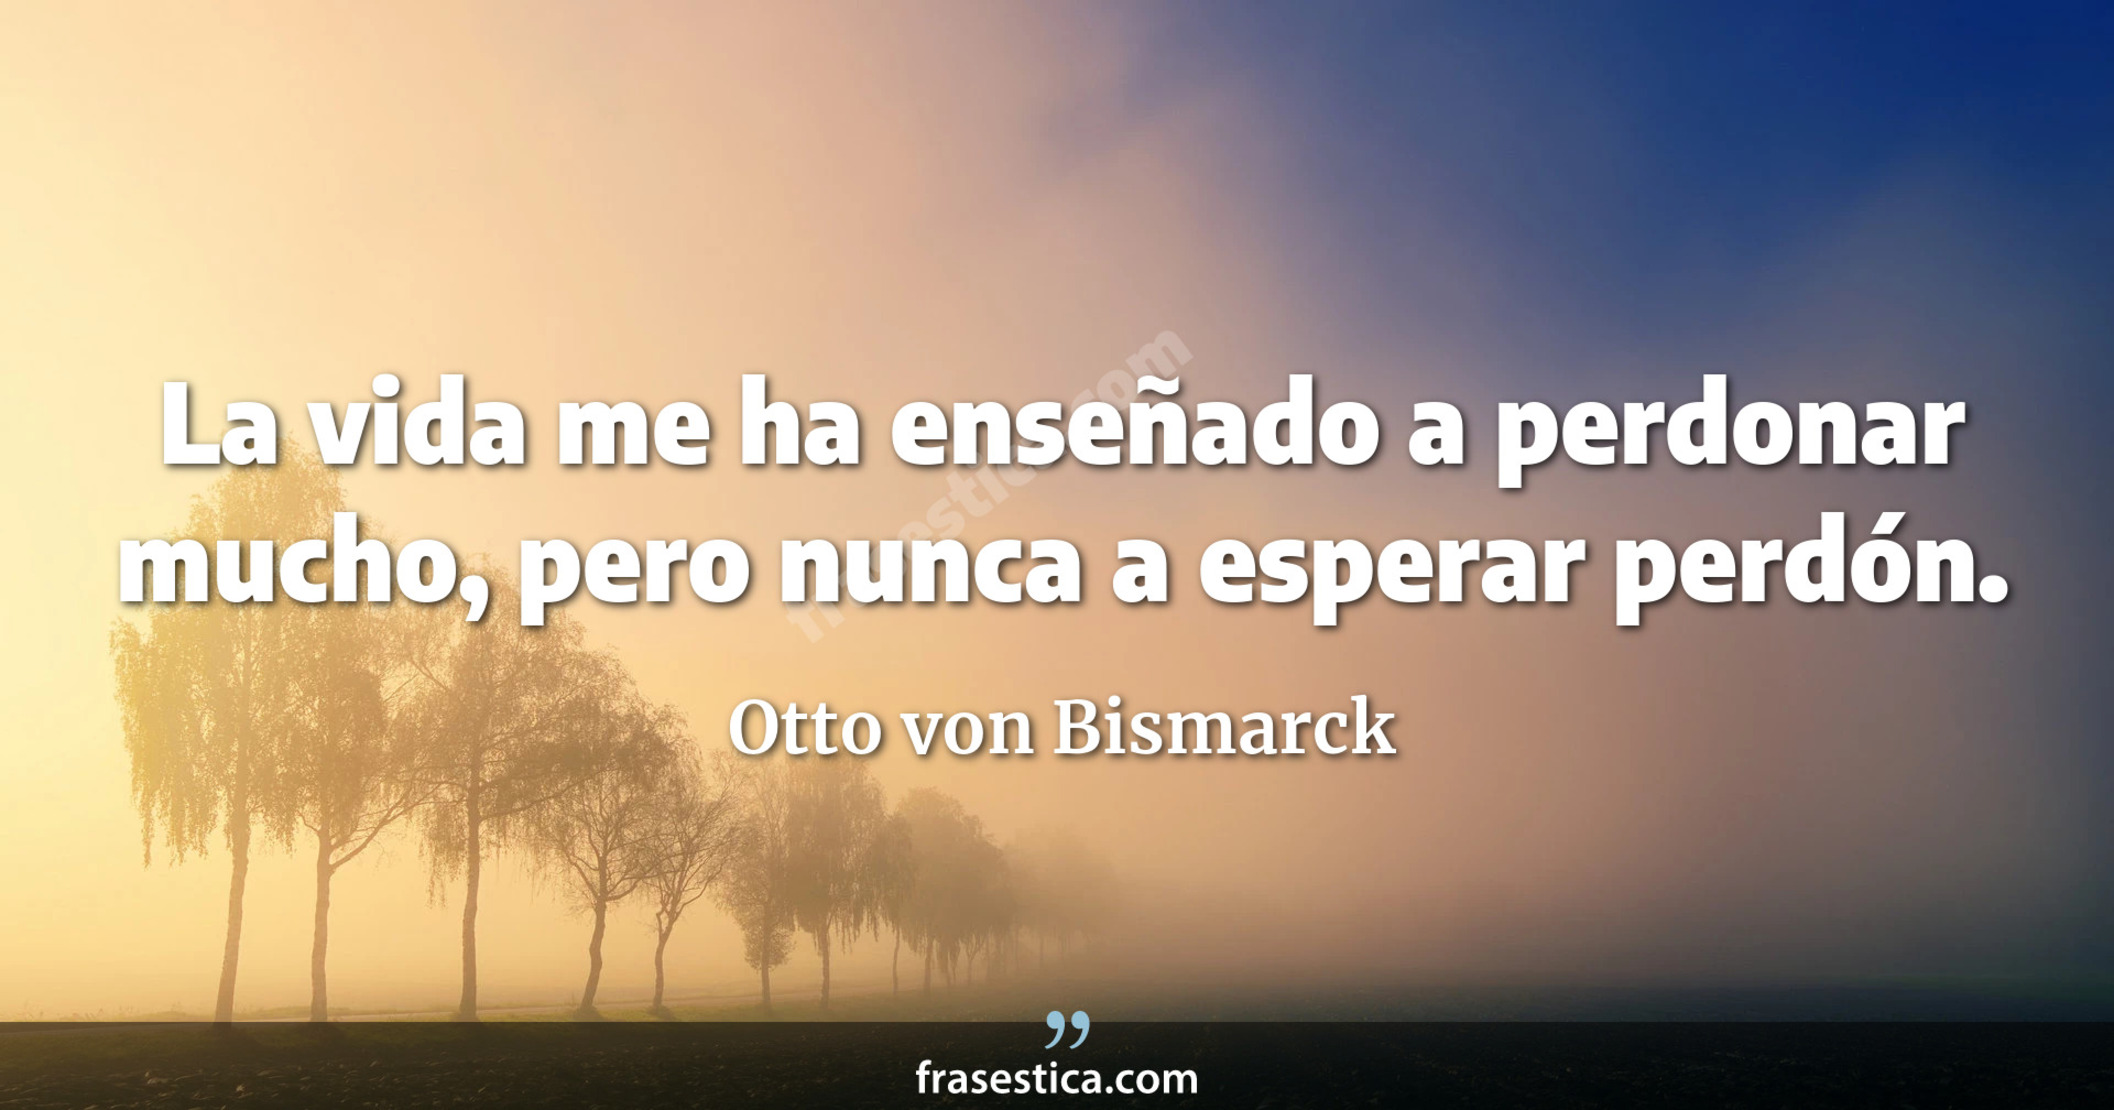 La vida me ha enseñado a perdonar mucho, pero nunca a esperar perdón. - Otto von Bismarck